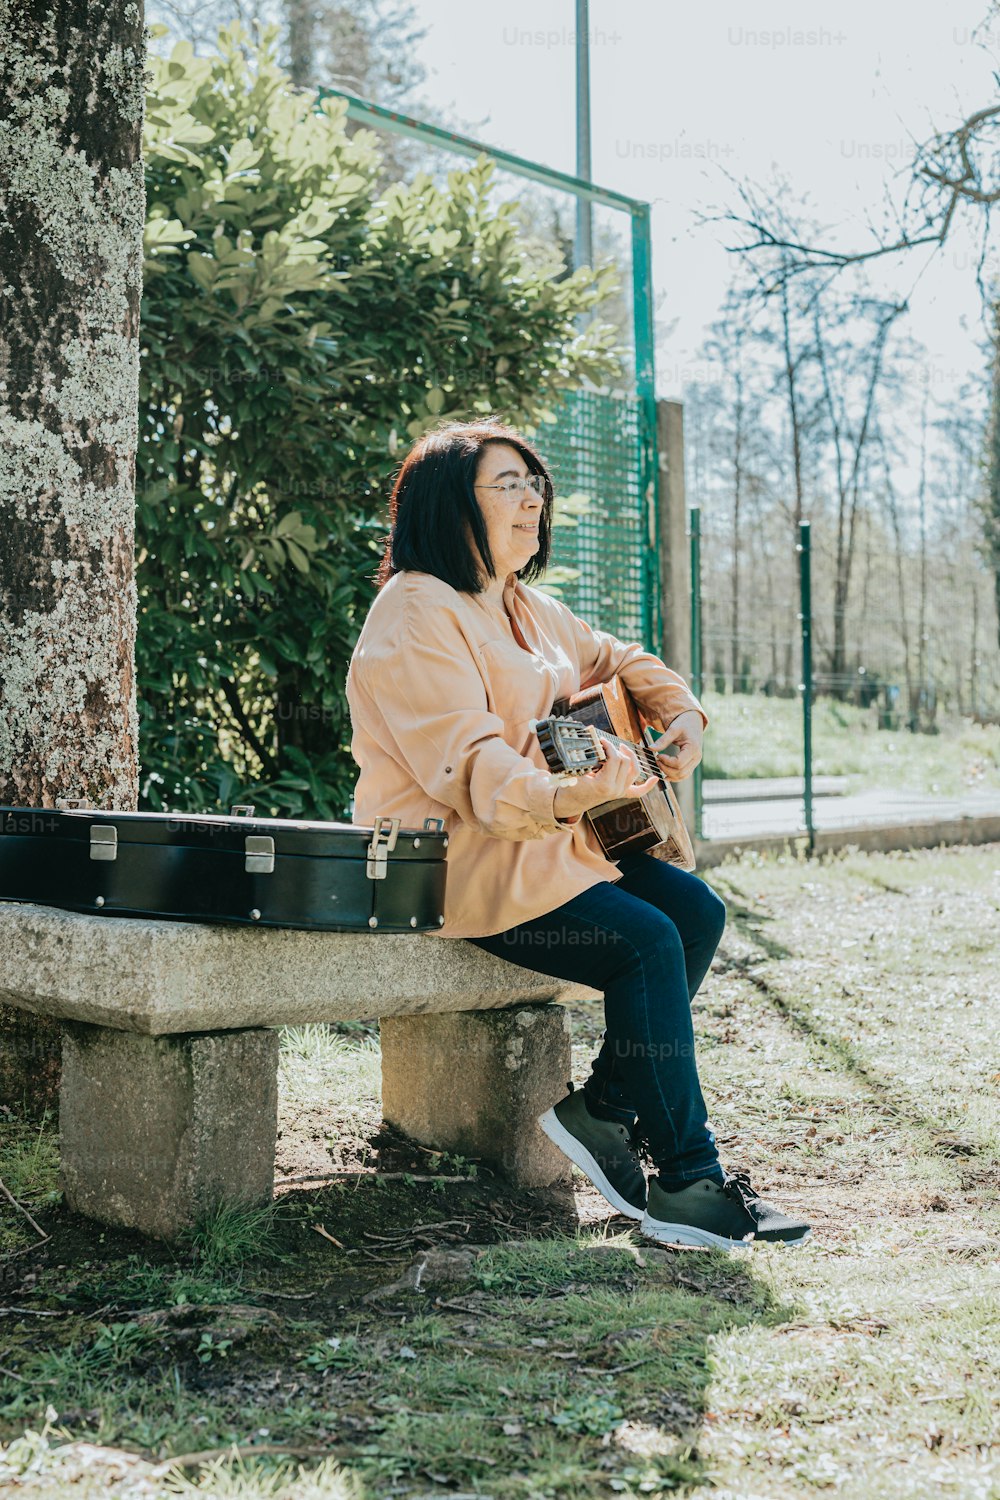 Una mujer sentada en un banco de cemento sosteniendo una guitarra